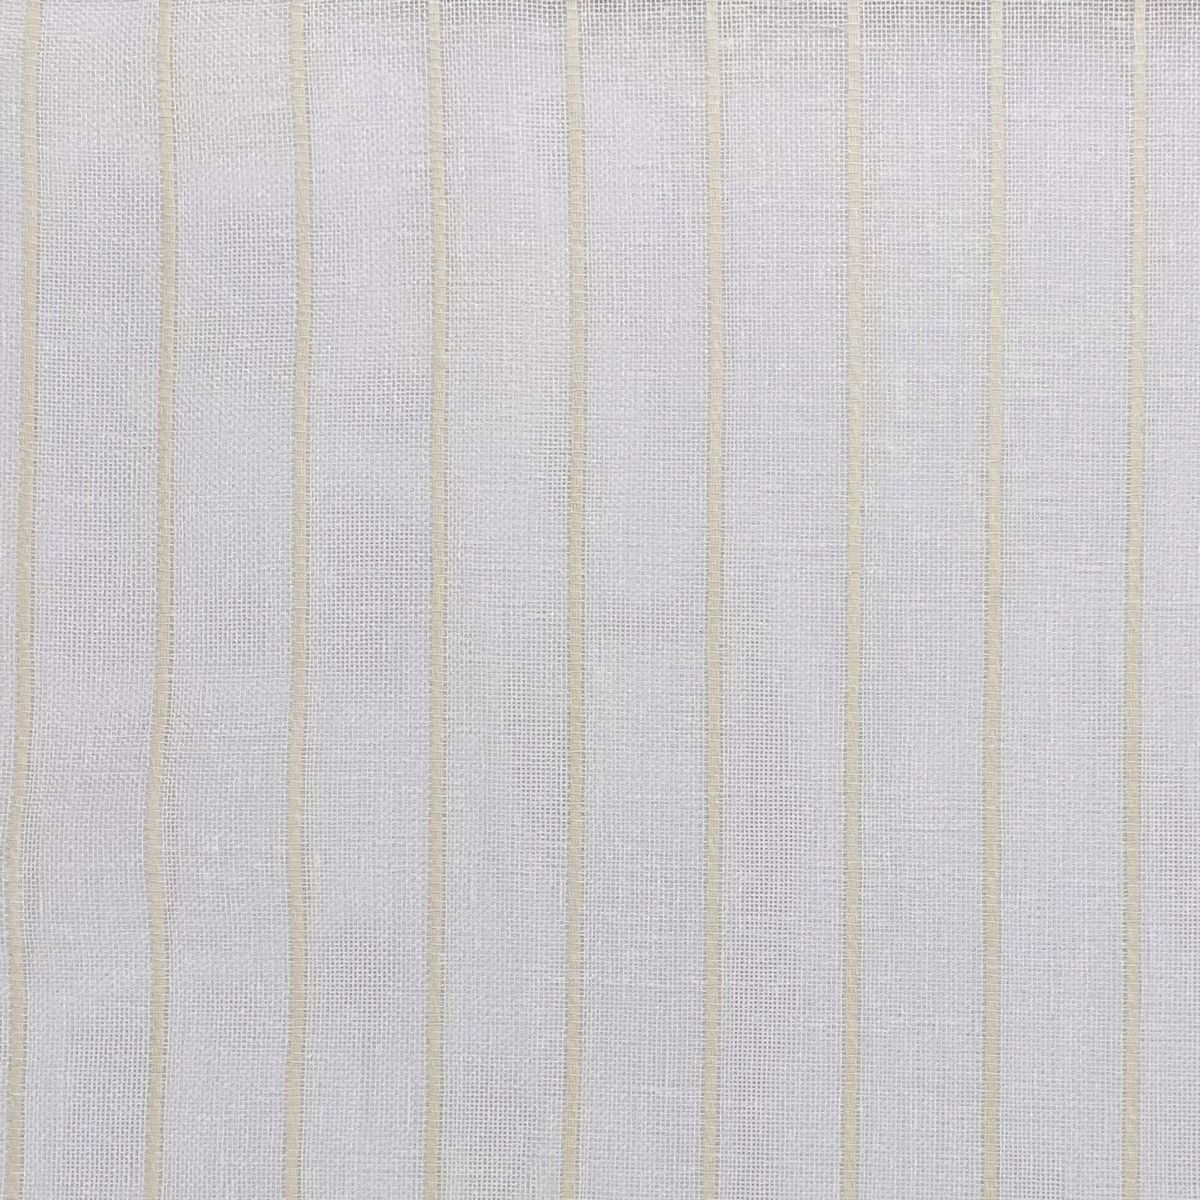 Mykonos Ivory Fabric by Chatham Glyn